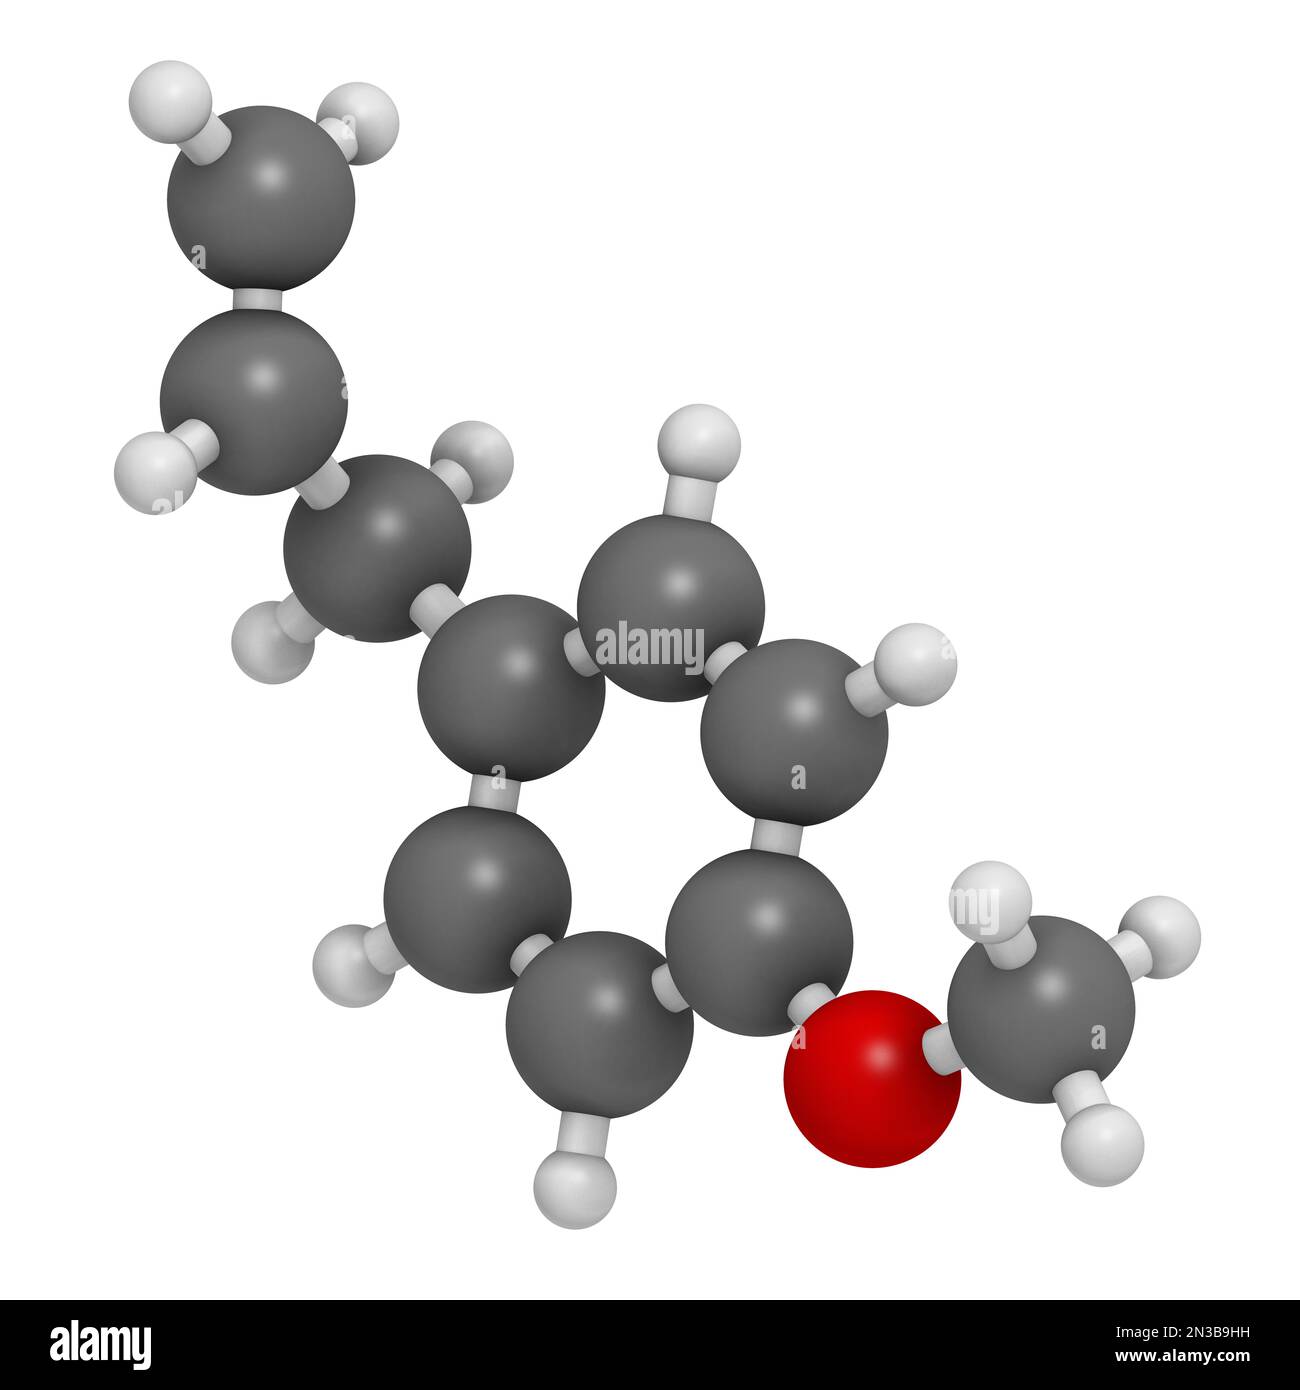 Ostragole pflanzliche Moleküle. 3D-Rendering. Atome werden als Kugeln mit herkömmlicher Farbcodierung dargestellt: Wasserstoff (weiß), Kohlenstoff (grau), Sauerstoff (rot) Stockfoto